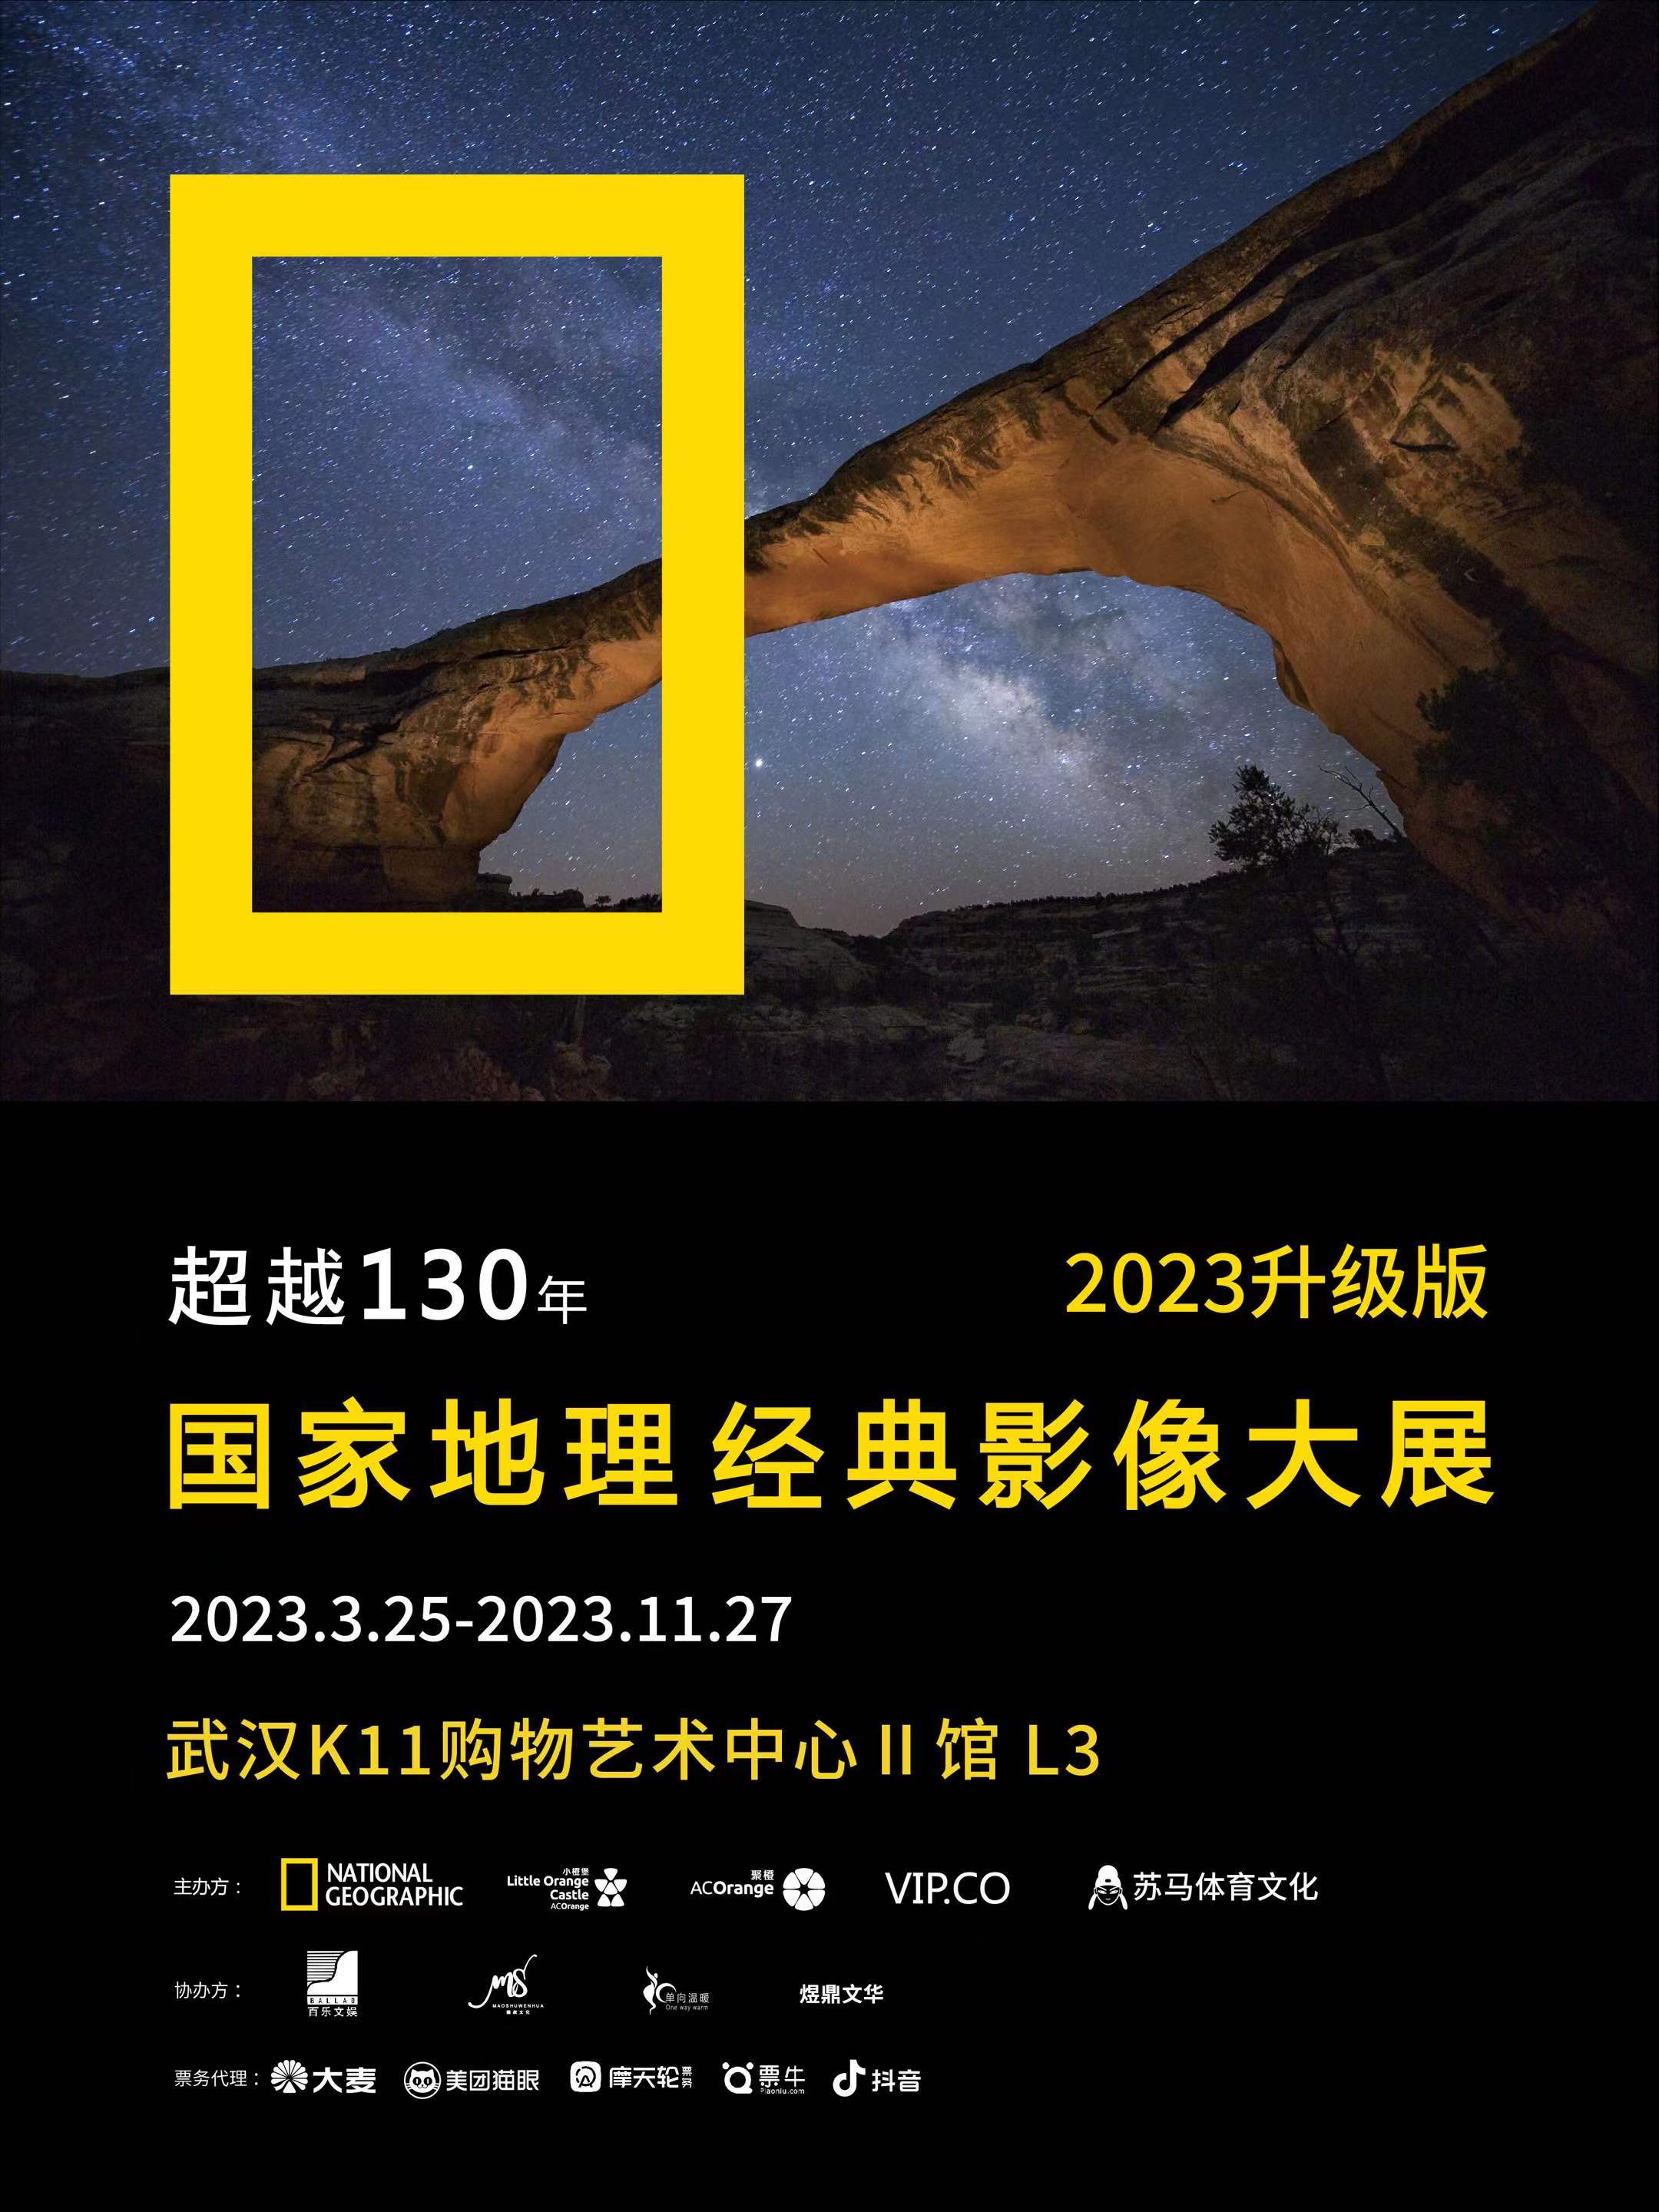 武汉国家地理经典影像展